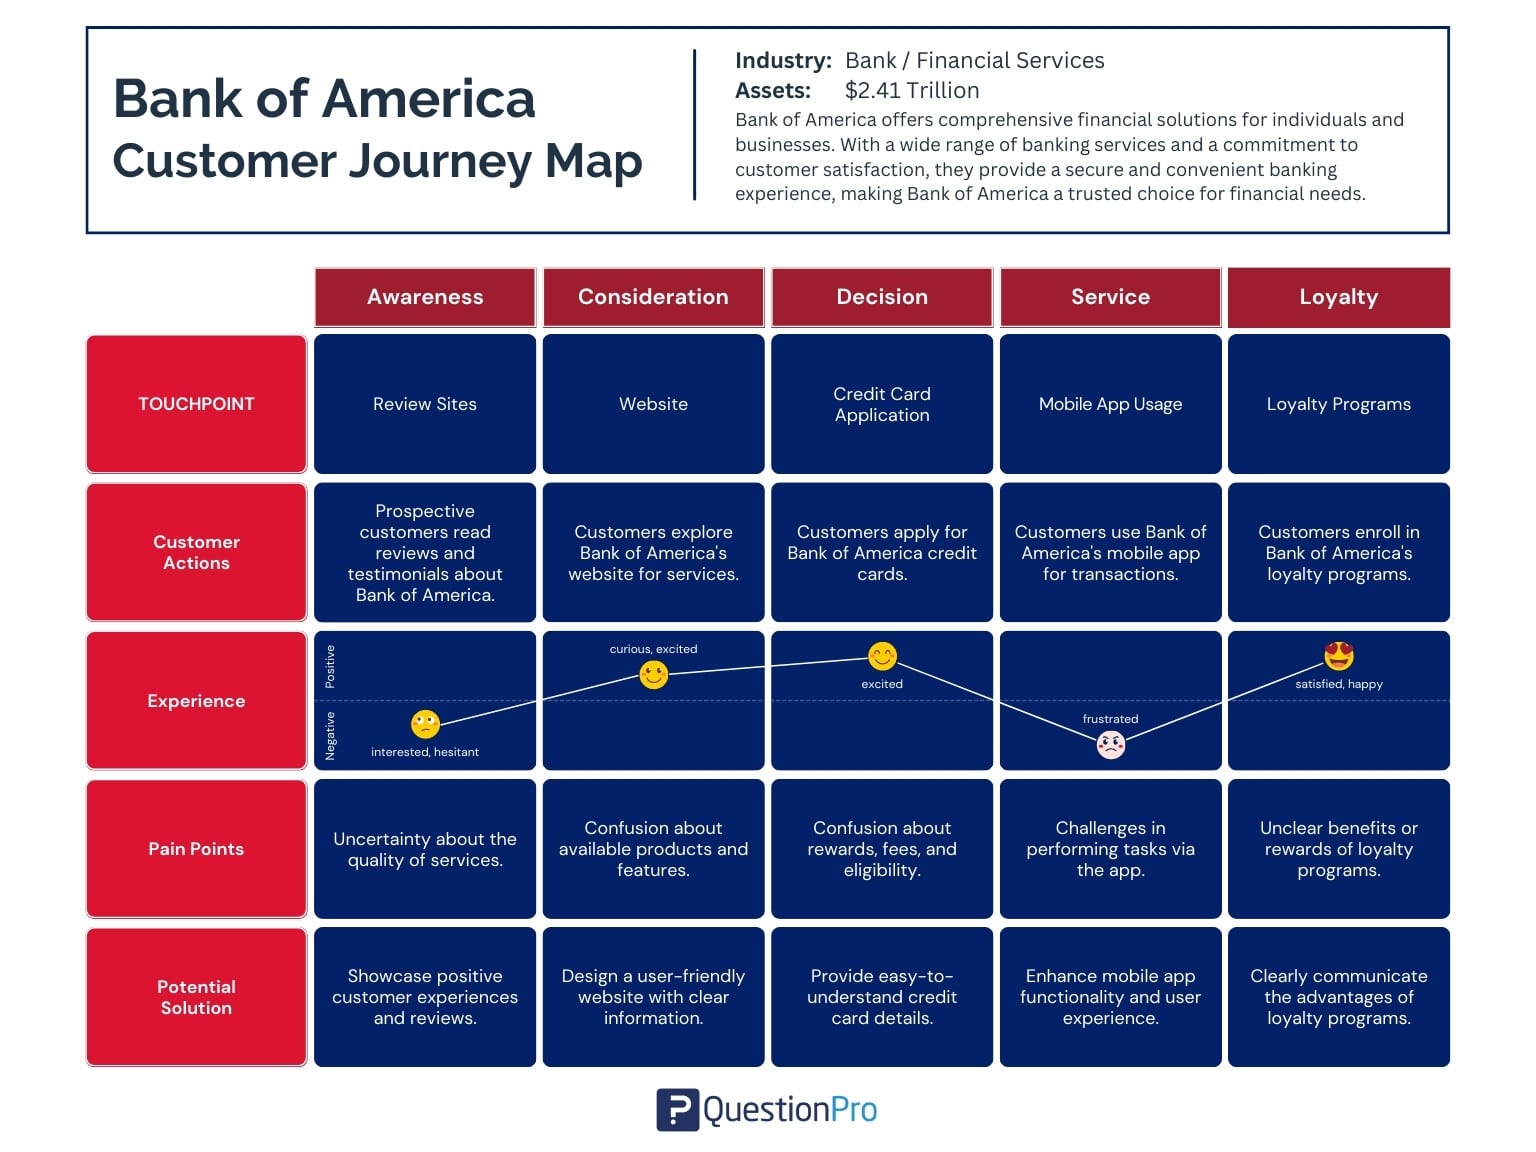 מפת מסע הלקוח בנק אוף אמריקה